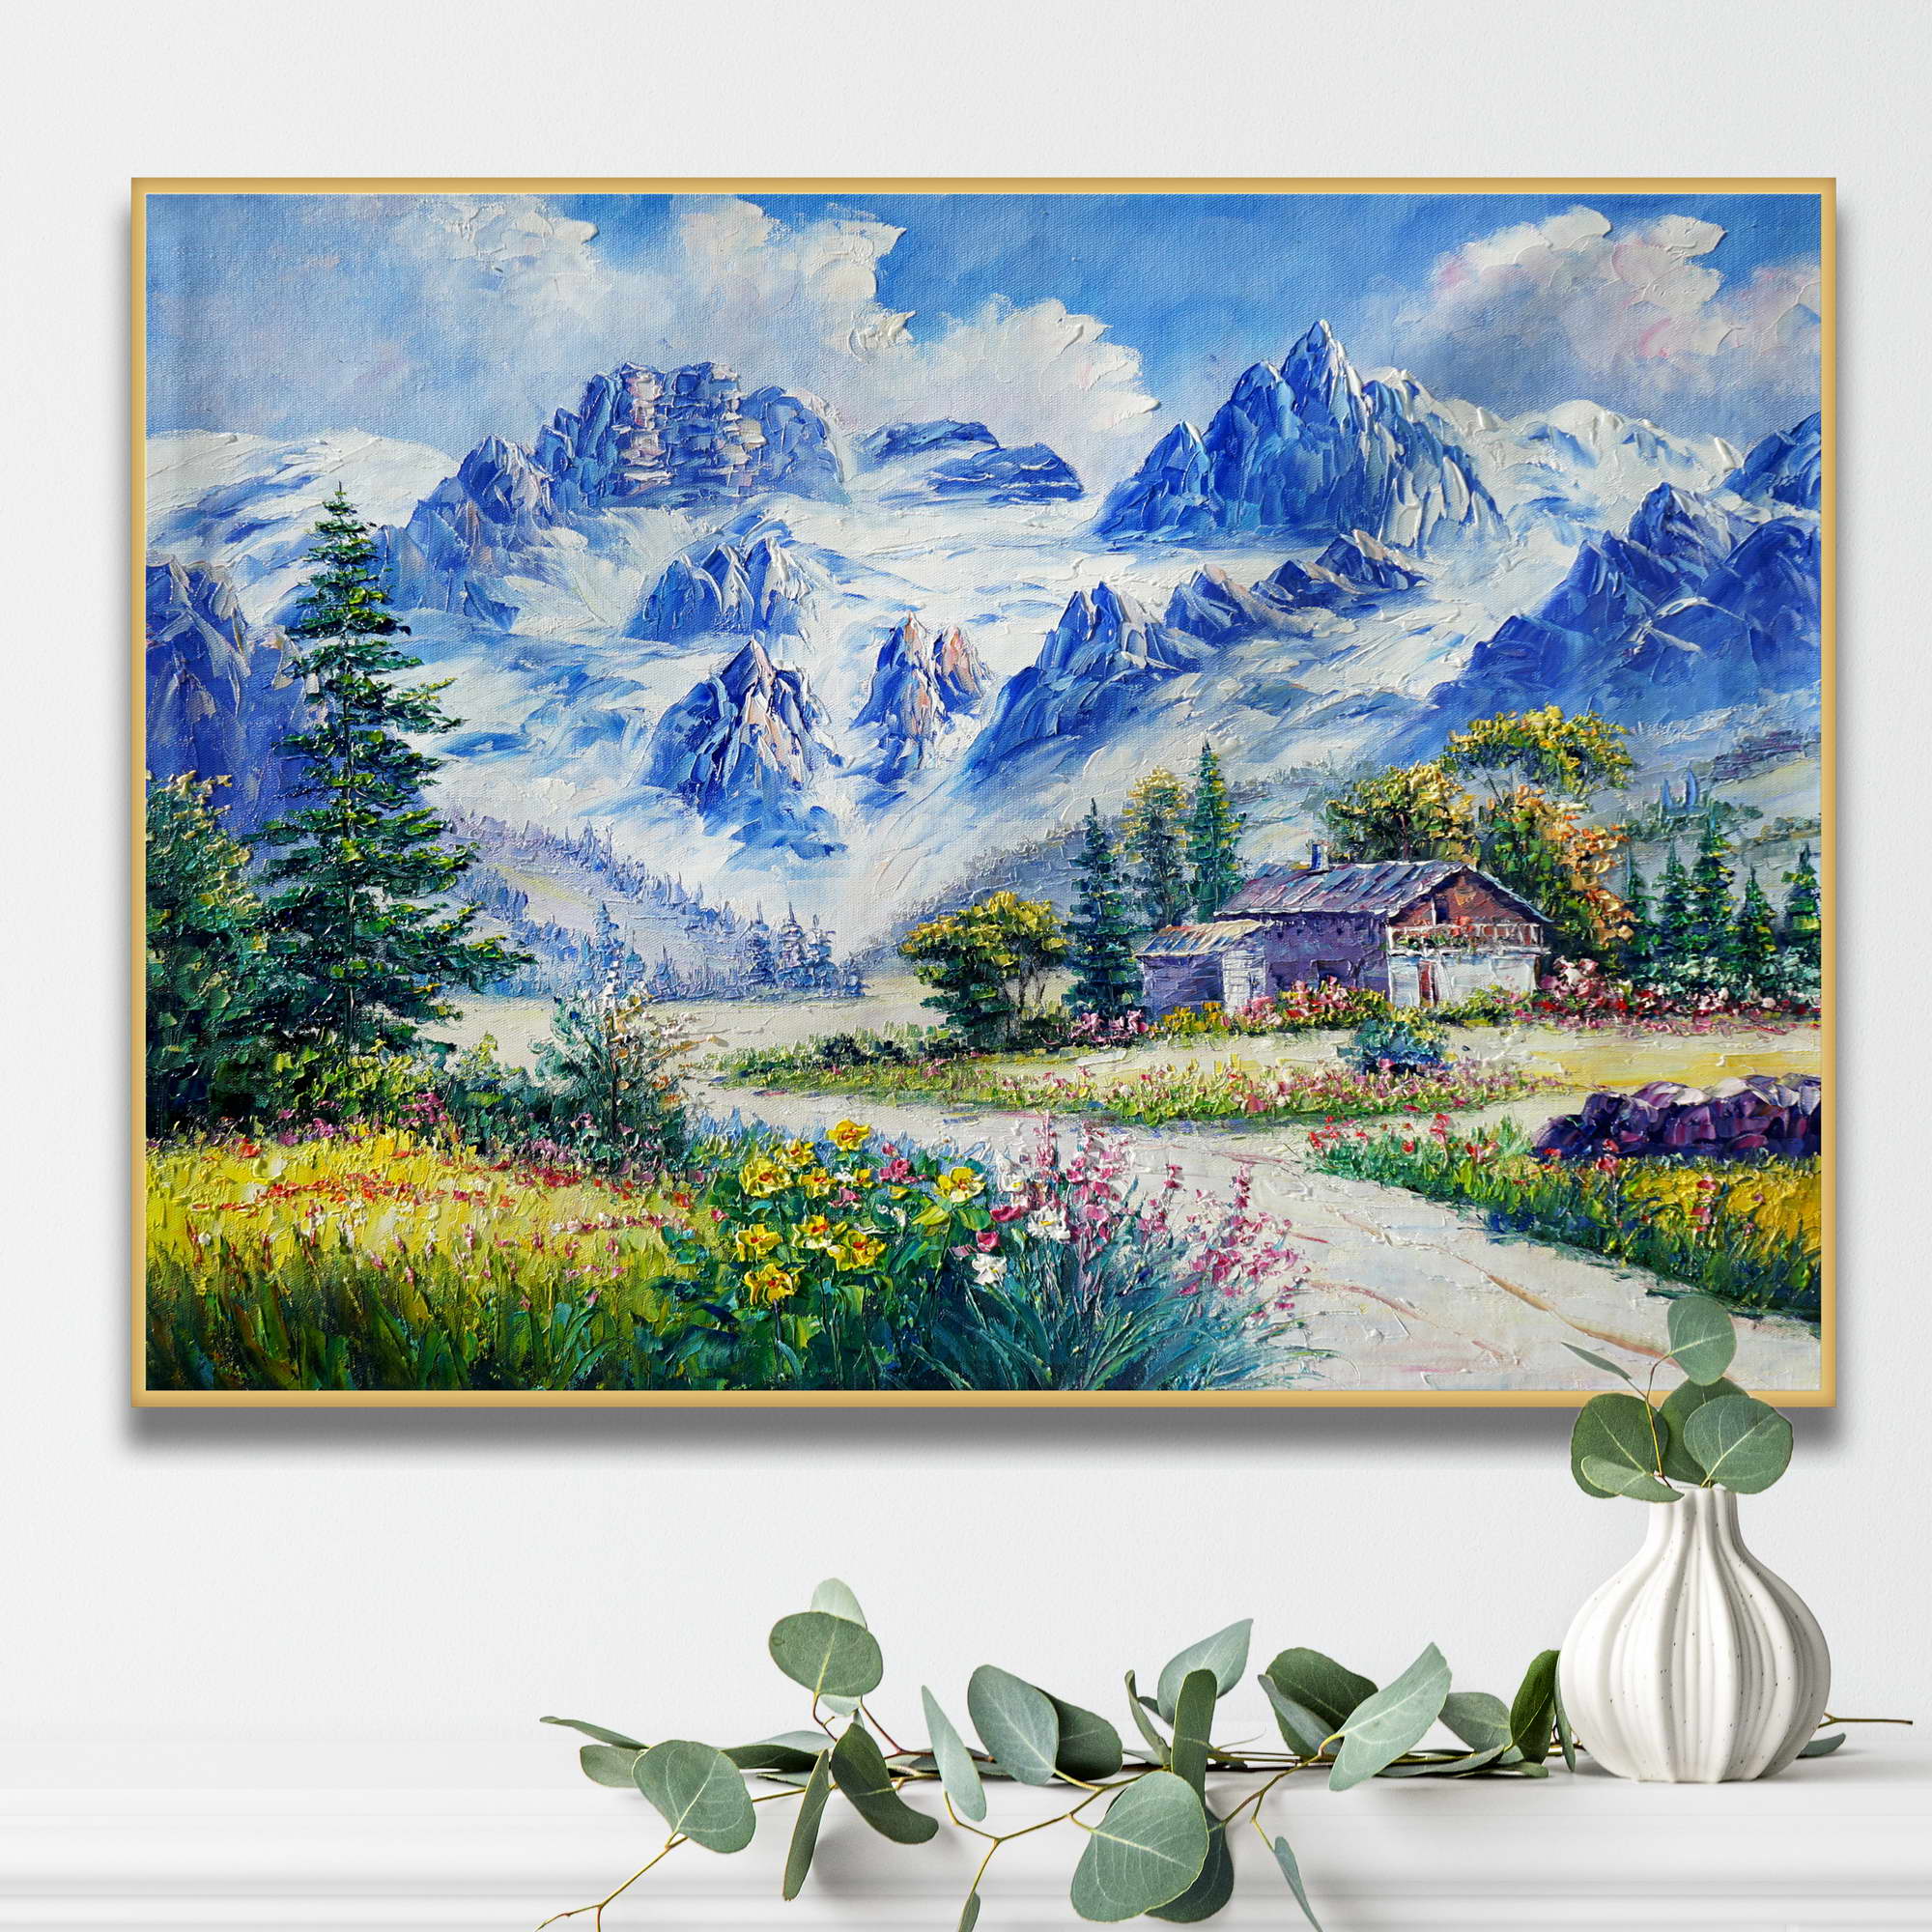 Dipinto di un paesaggio montano con una casetta immersa nei fiori